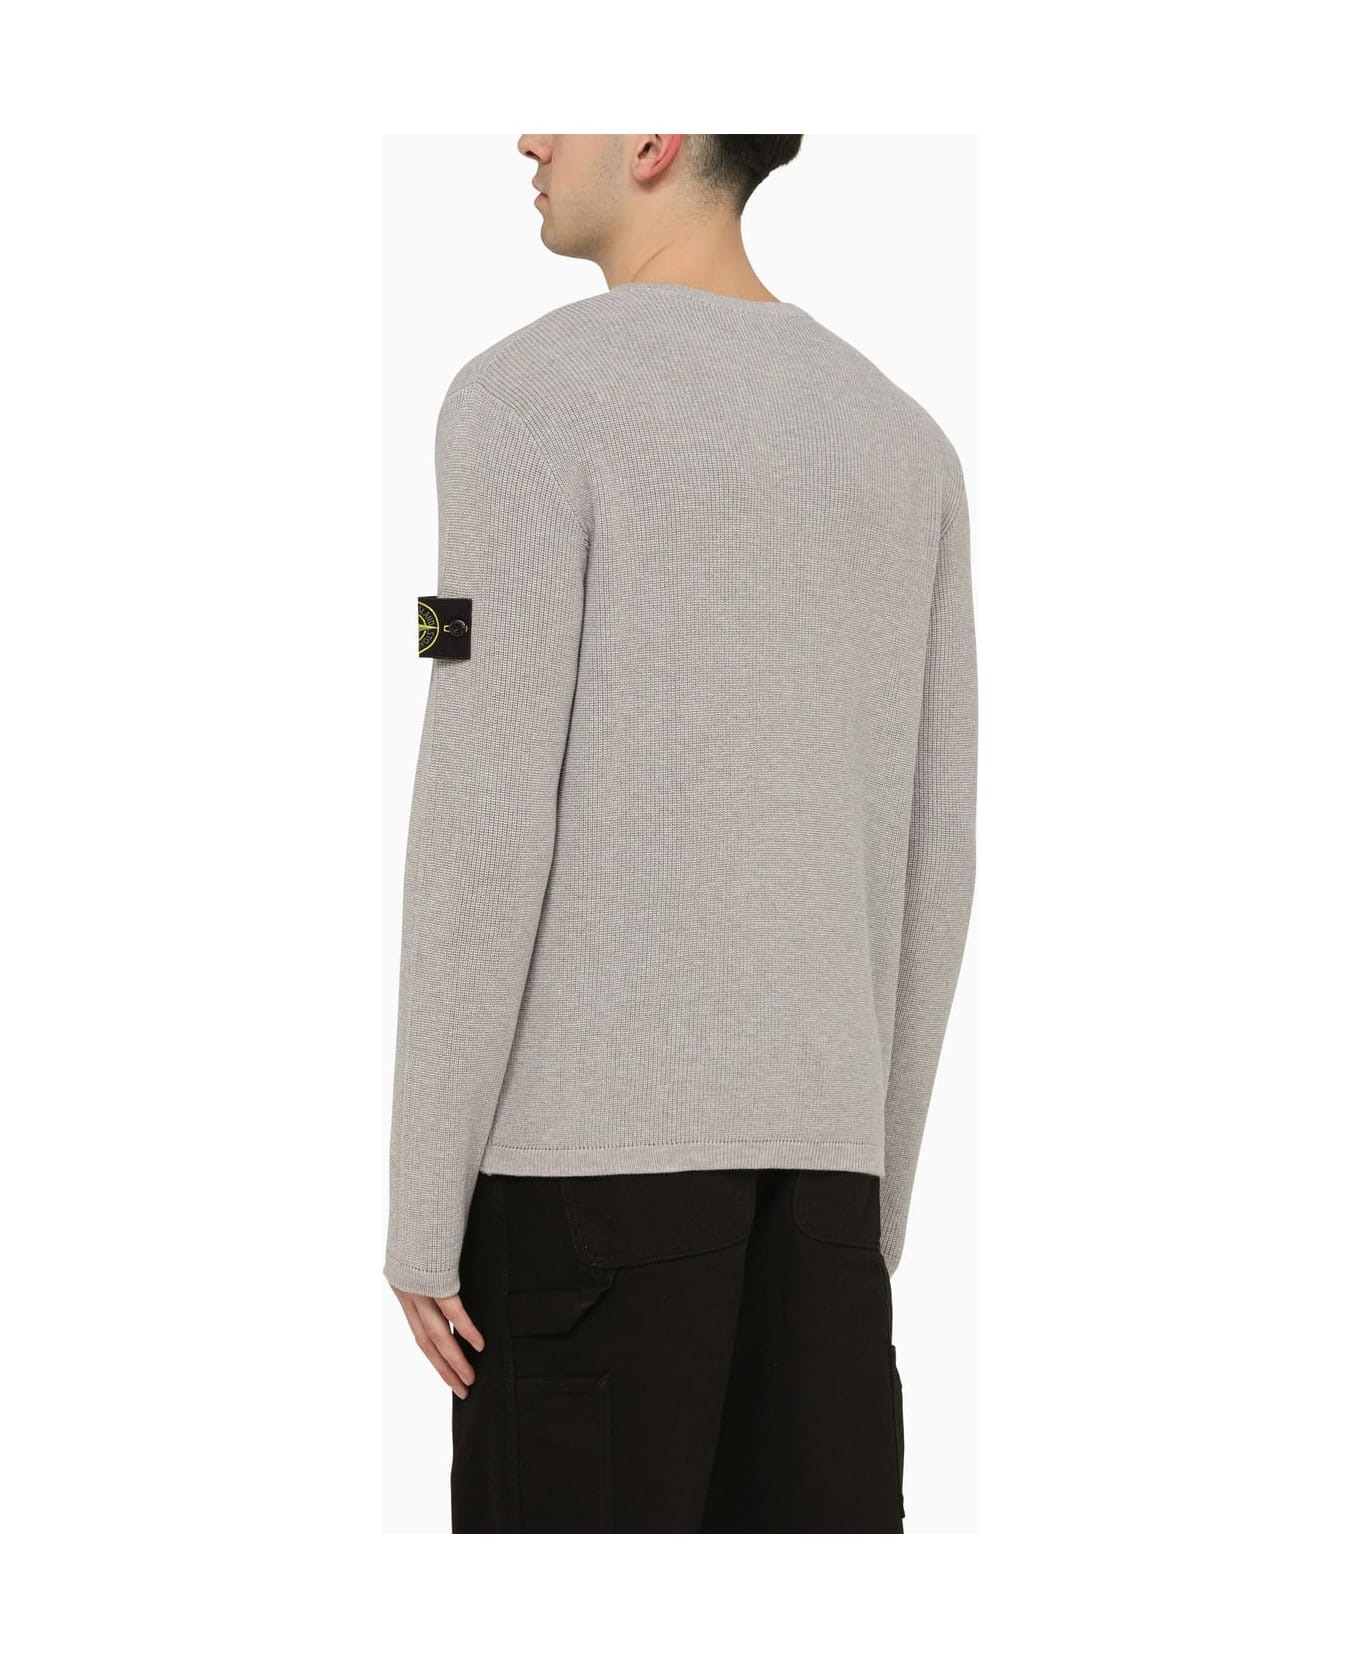 Stone Island Logo Patched Knit Plain Sweatshirt - Melange Grey ニットウェア